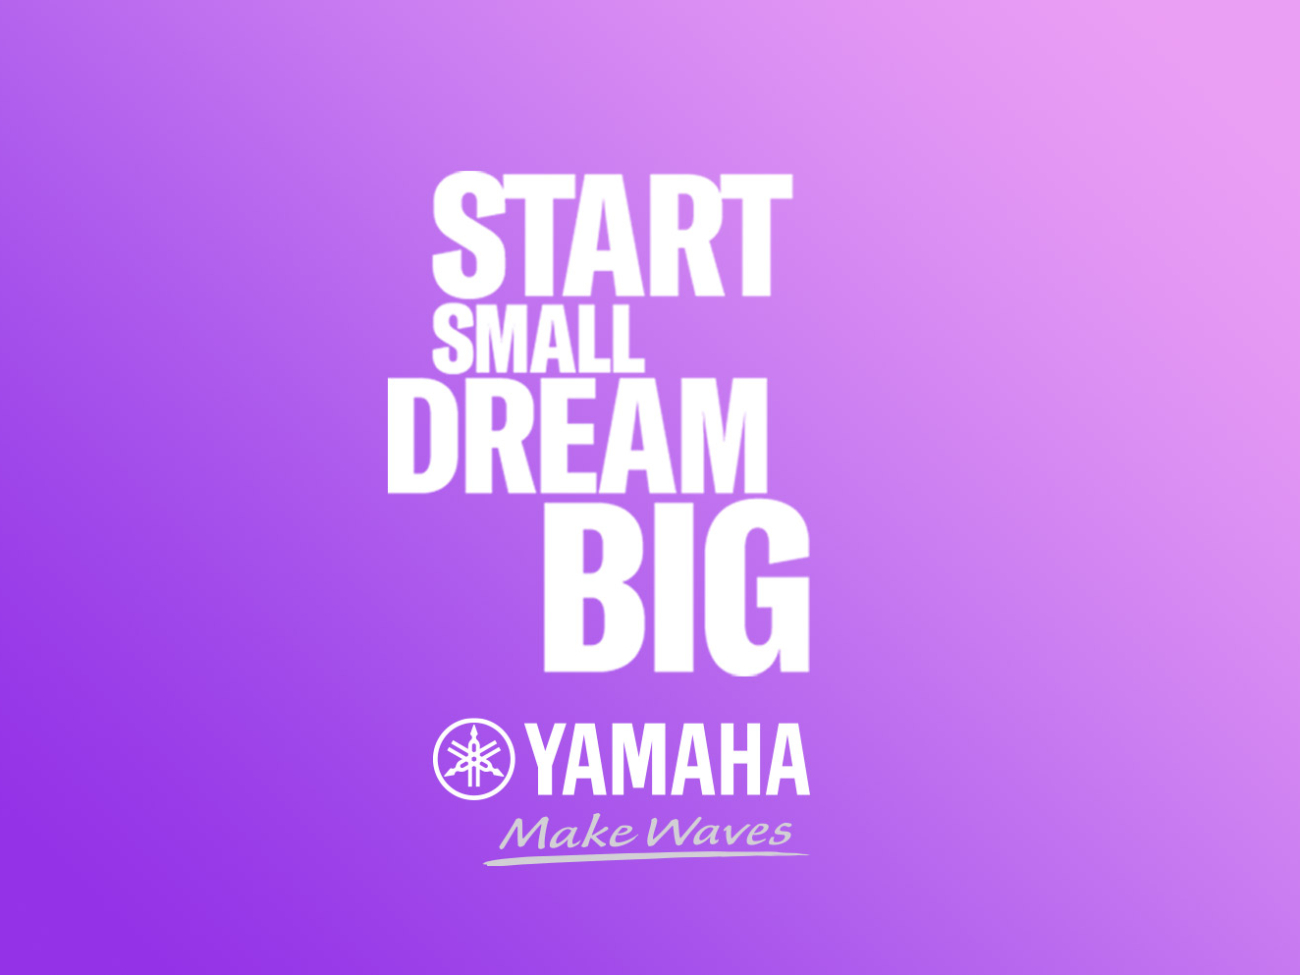 Yamaha-start-small-dream-big-instrumentos-para-iniciantes-egitana